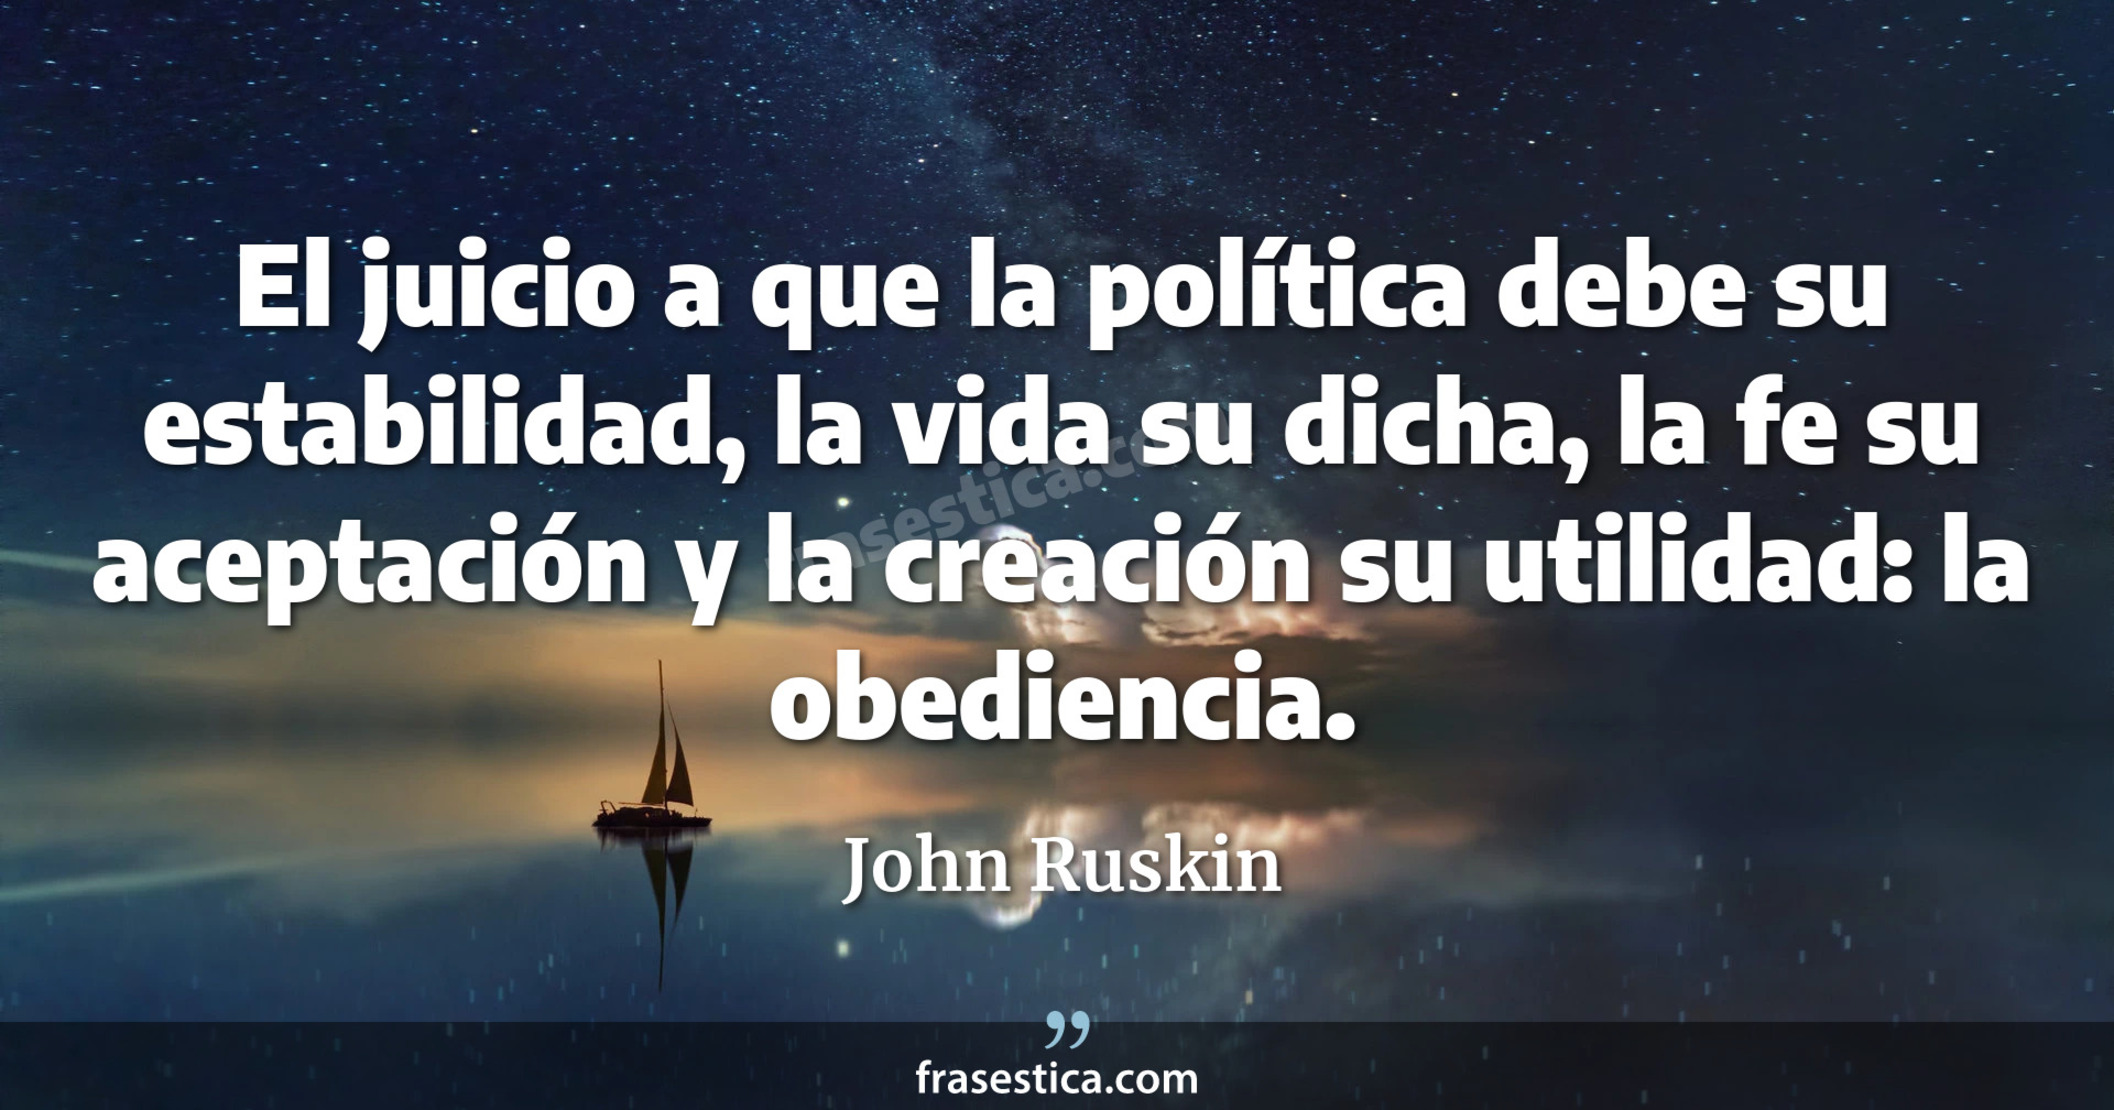 El juicio a que la política debe su estabilidad, la vida su dicha, la fe su aceptación y la creación su utilidad: la obediencia. - John Ruskin